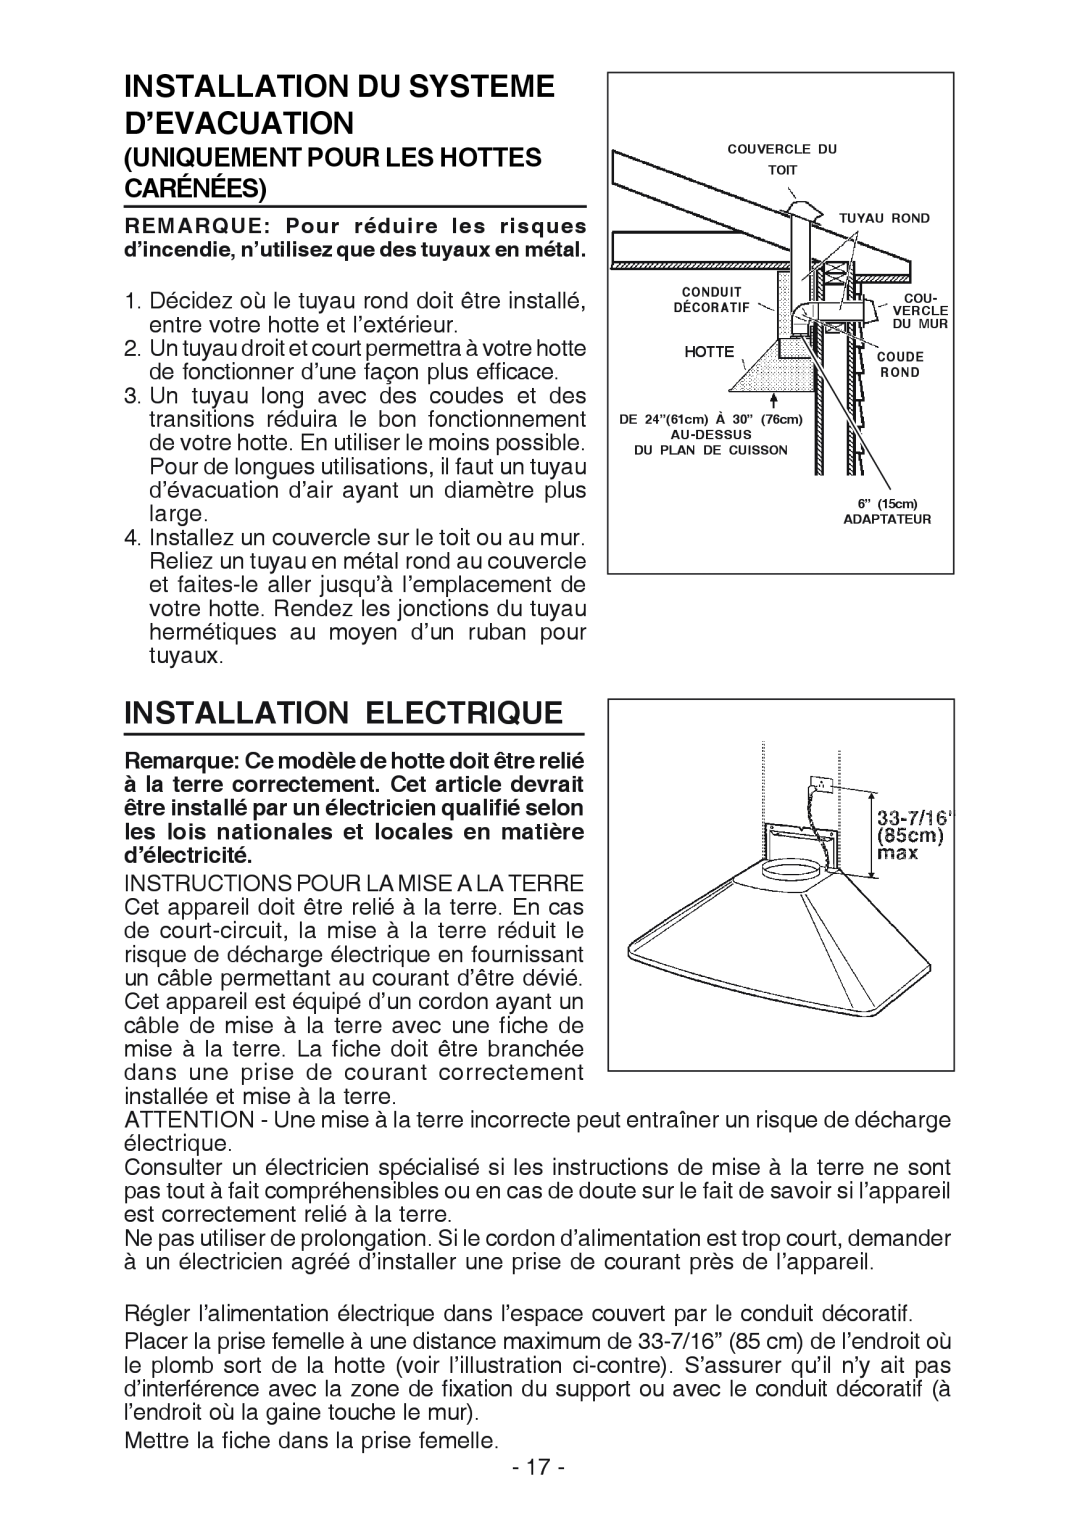 Best K3139 manual Installation Du Systeme D’Evacuation, Installation Electrique, Uniquement Pour Les Hottes Carénées 